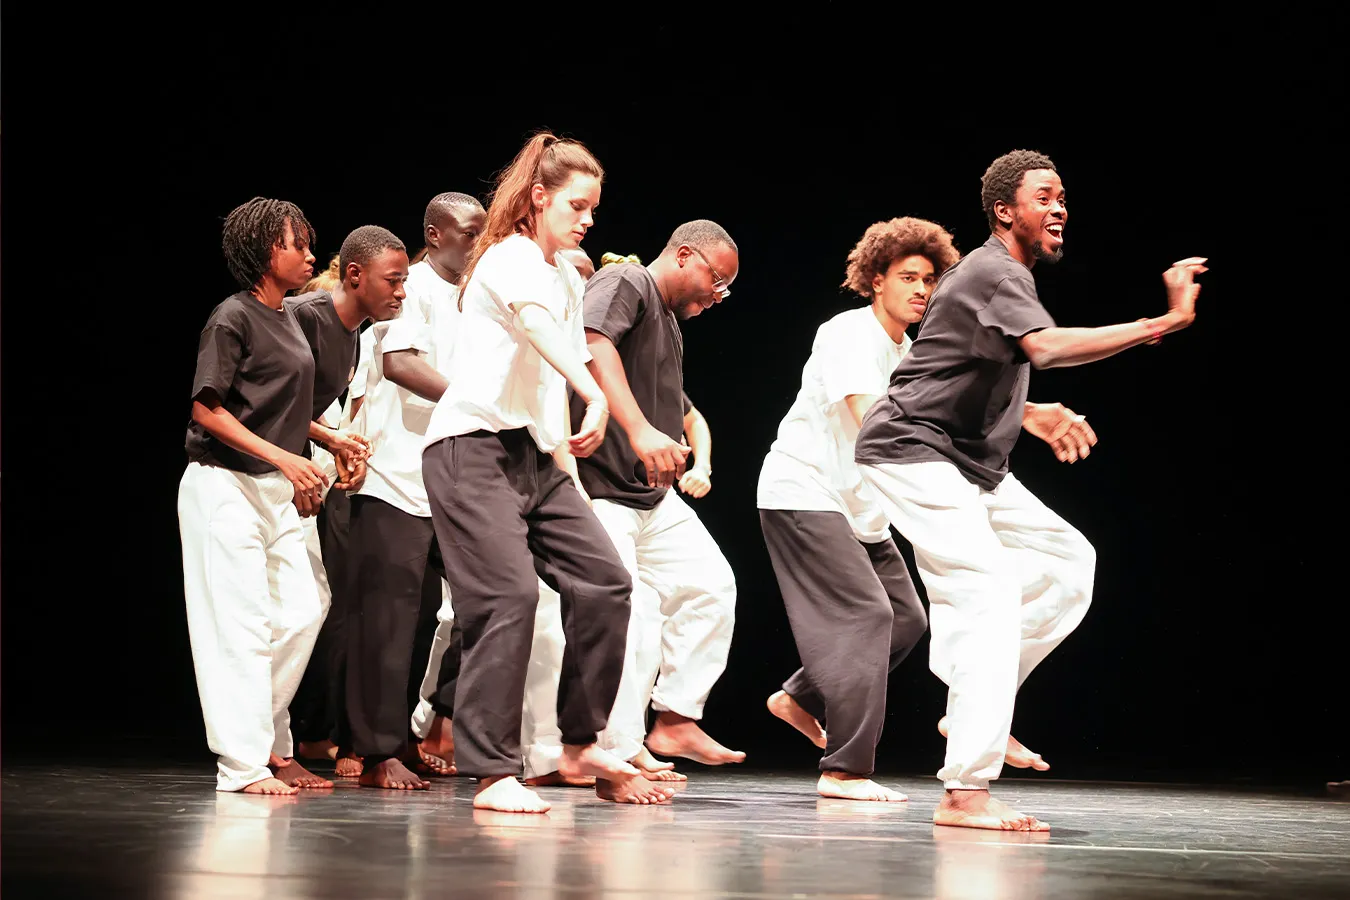 Eine Gruppe junger Menschen wird auf dem Foto bei einer Tanzaufführung gezeigt. Sie tragen schwarze und weiße Kleidung und sind in Bewegung.